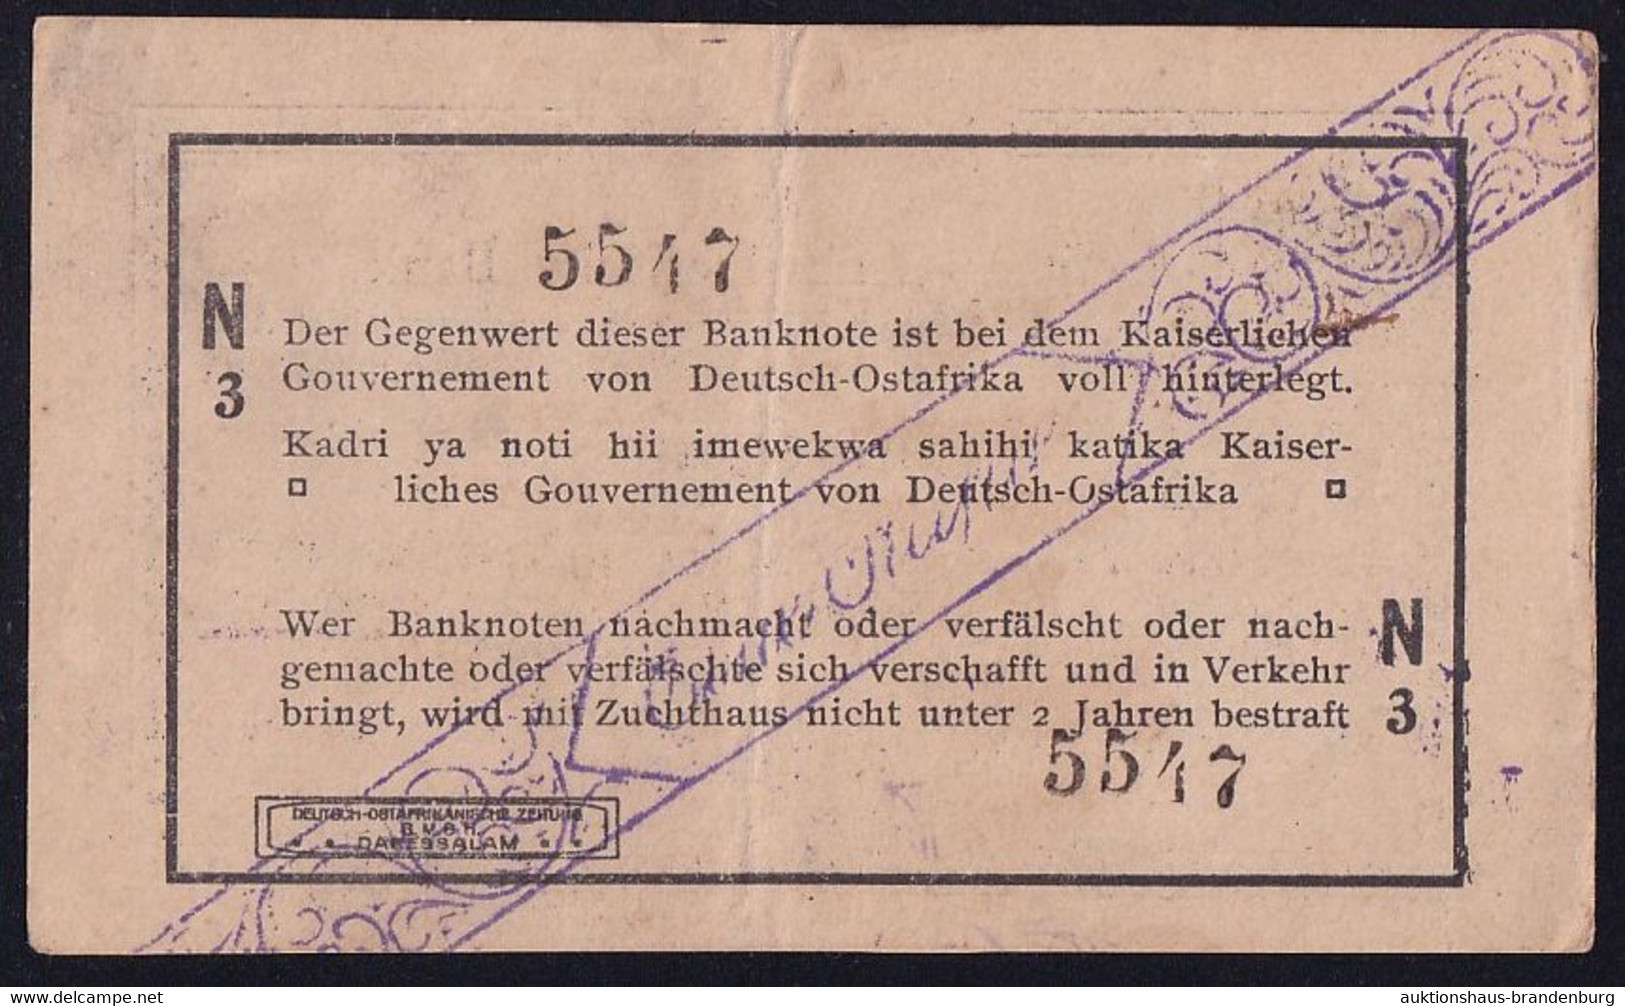 DOA Deutsch Ostafrika: 1 Rupie 1.2.1916 - Serie N3 - KN 4-stellig (DOA-31a) - Deutsch-Ostafrikanische Bank